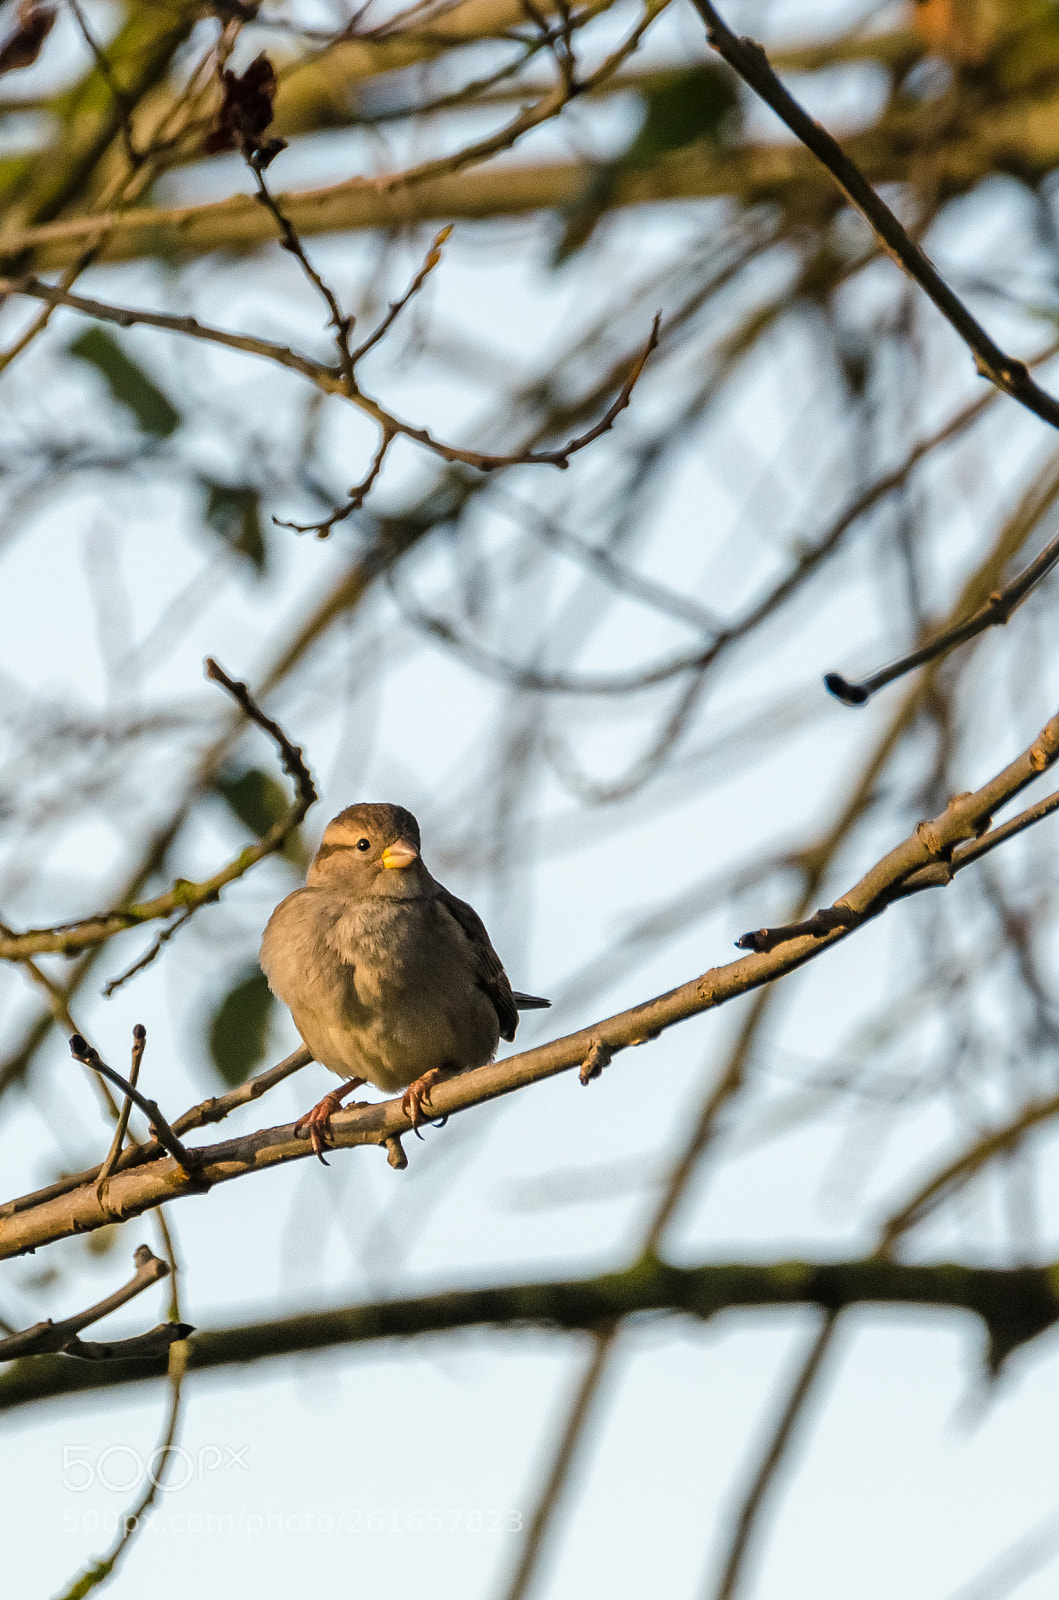 Nikon D5100 sample photo. Moineau femelle female sparrow photography